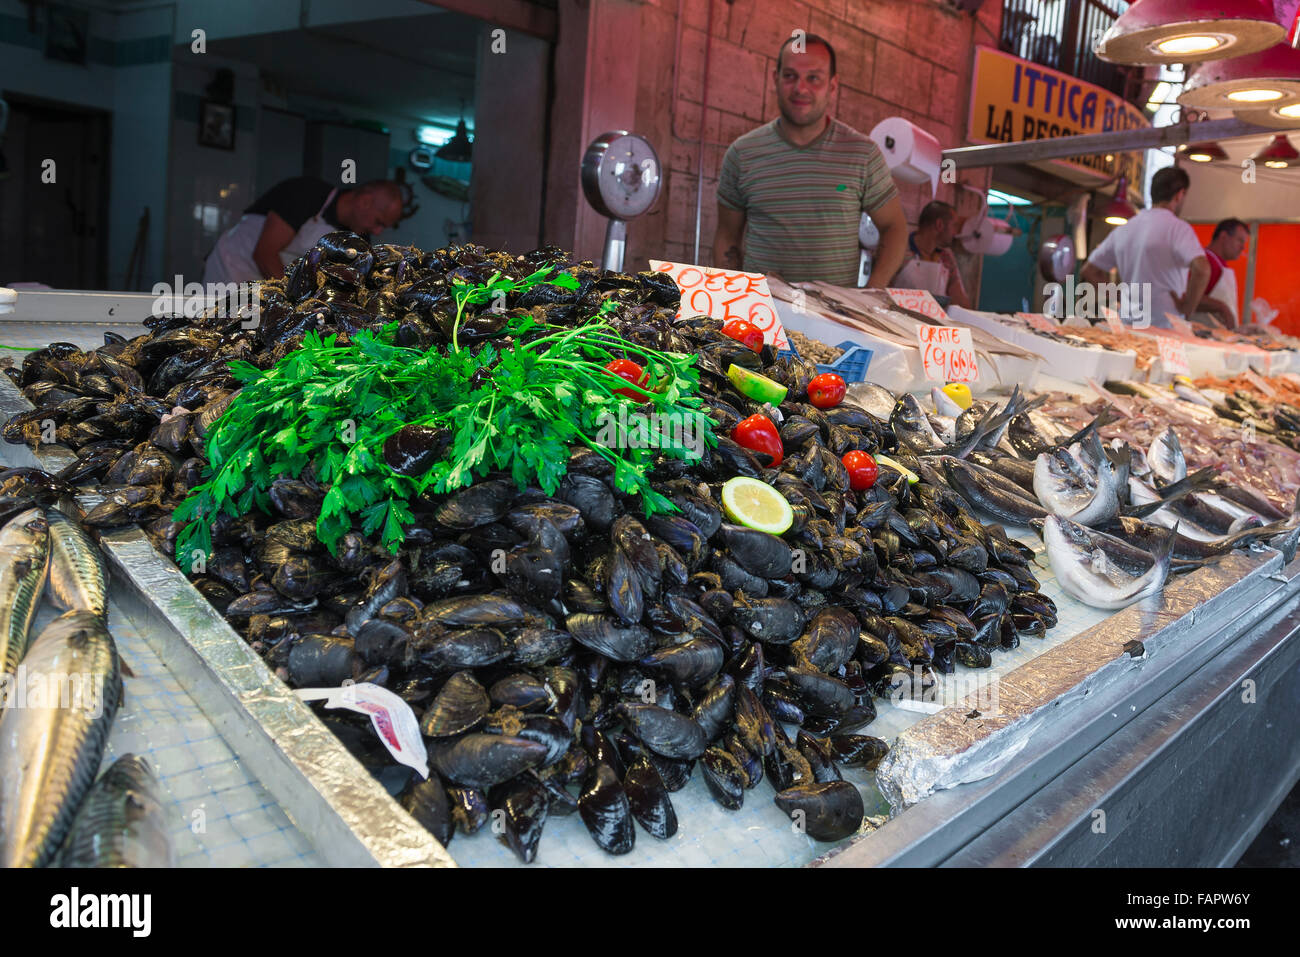 Les moules du marché des fruits de mer, vue de moules fraîches en vente sur le marché à l'île de Ortigia Ortigia (Syracuse), Syracuse (Sicile). Banque D'Images